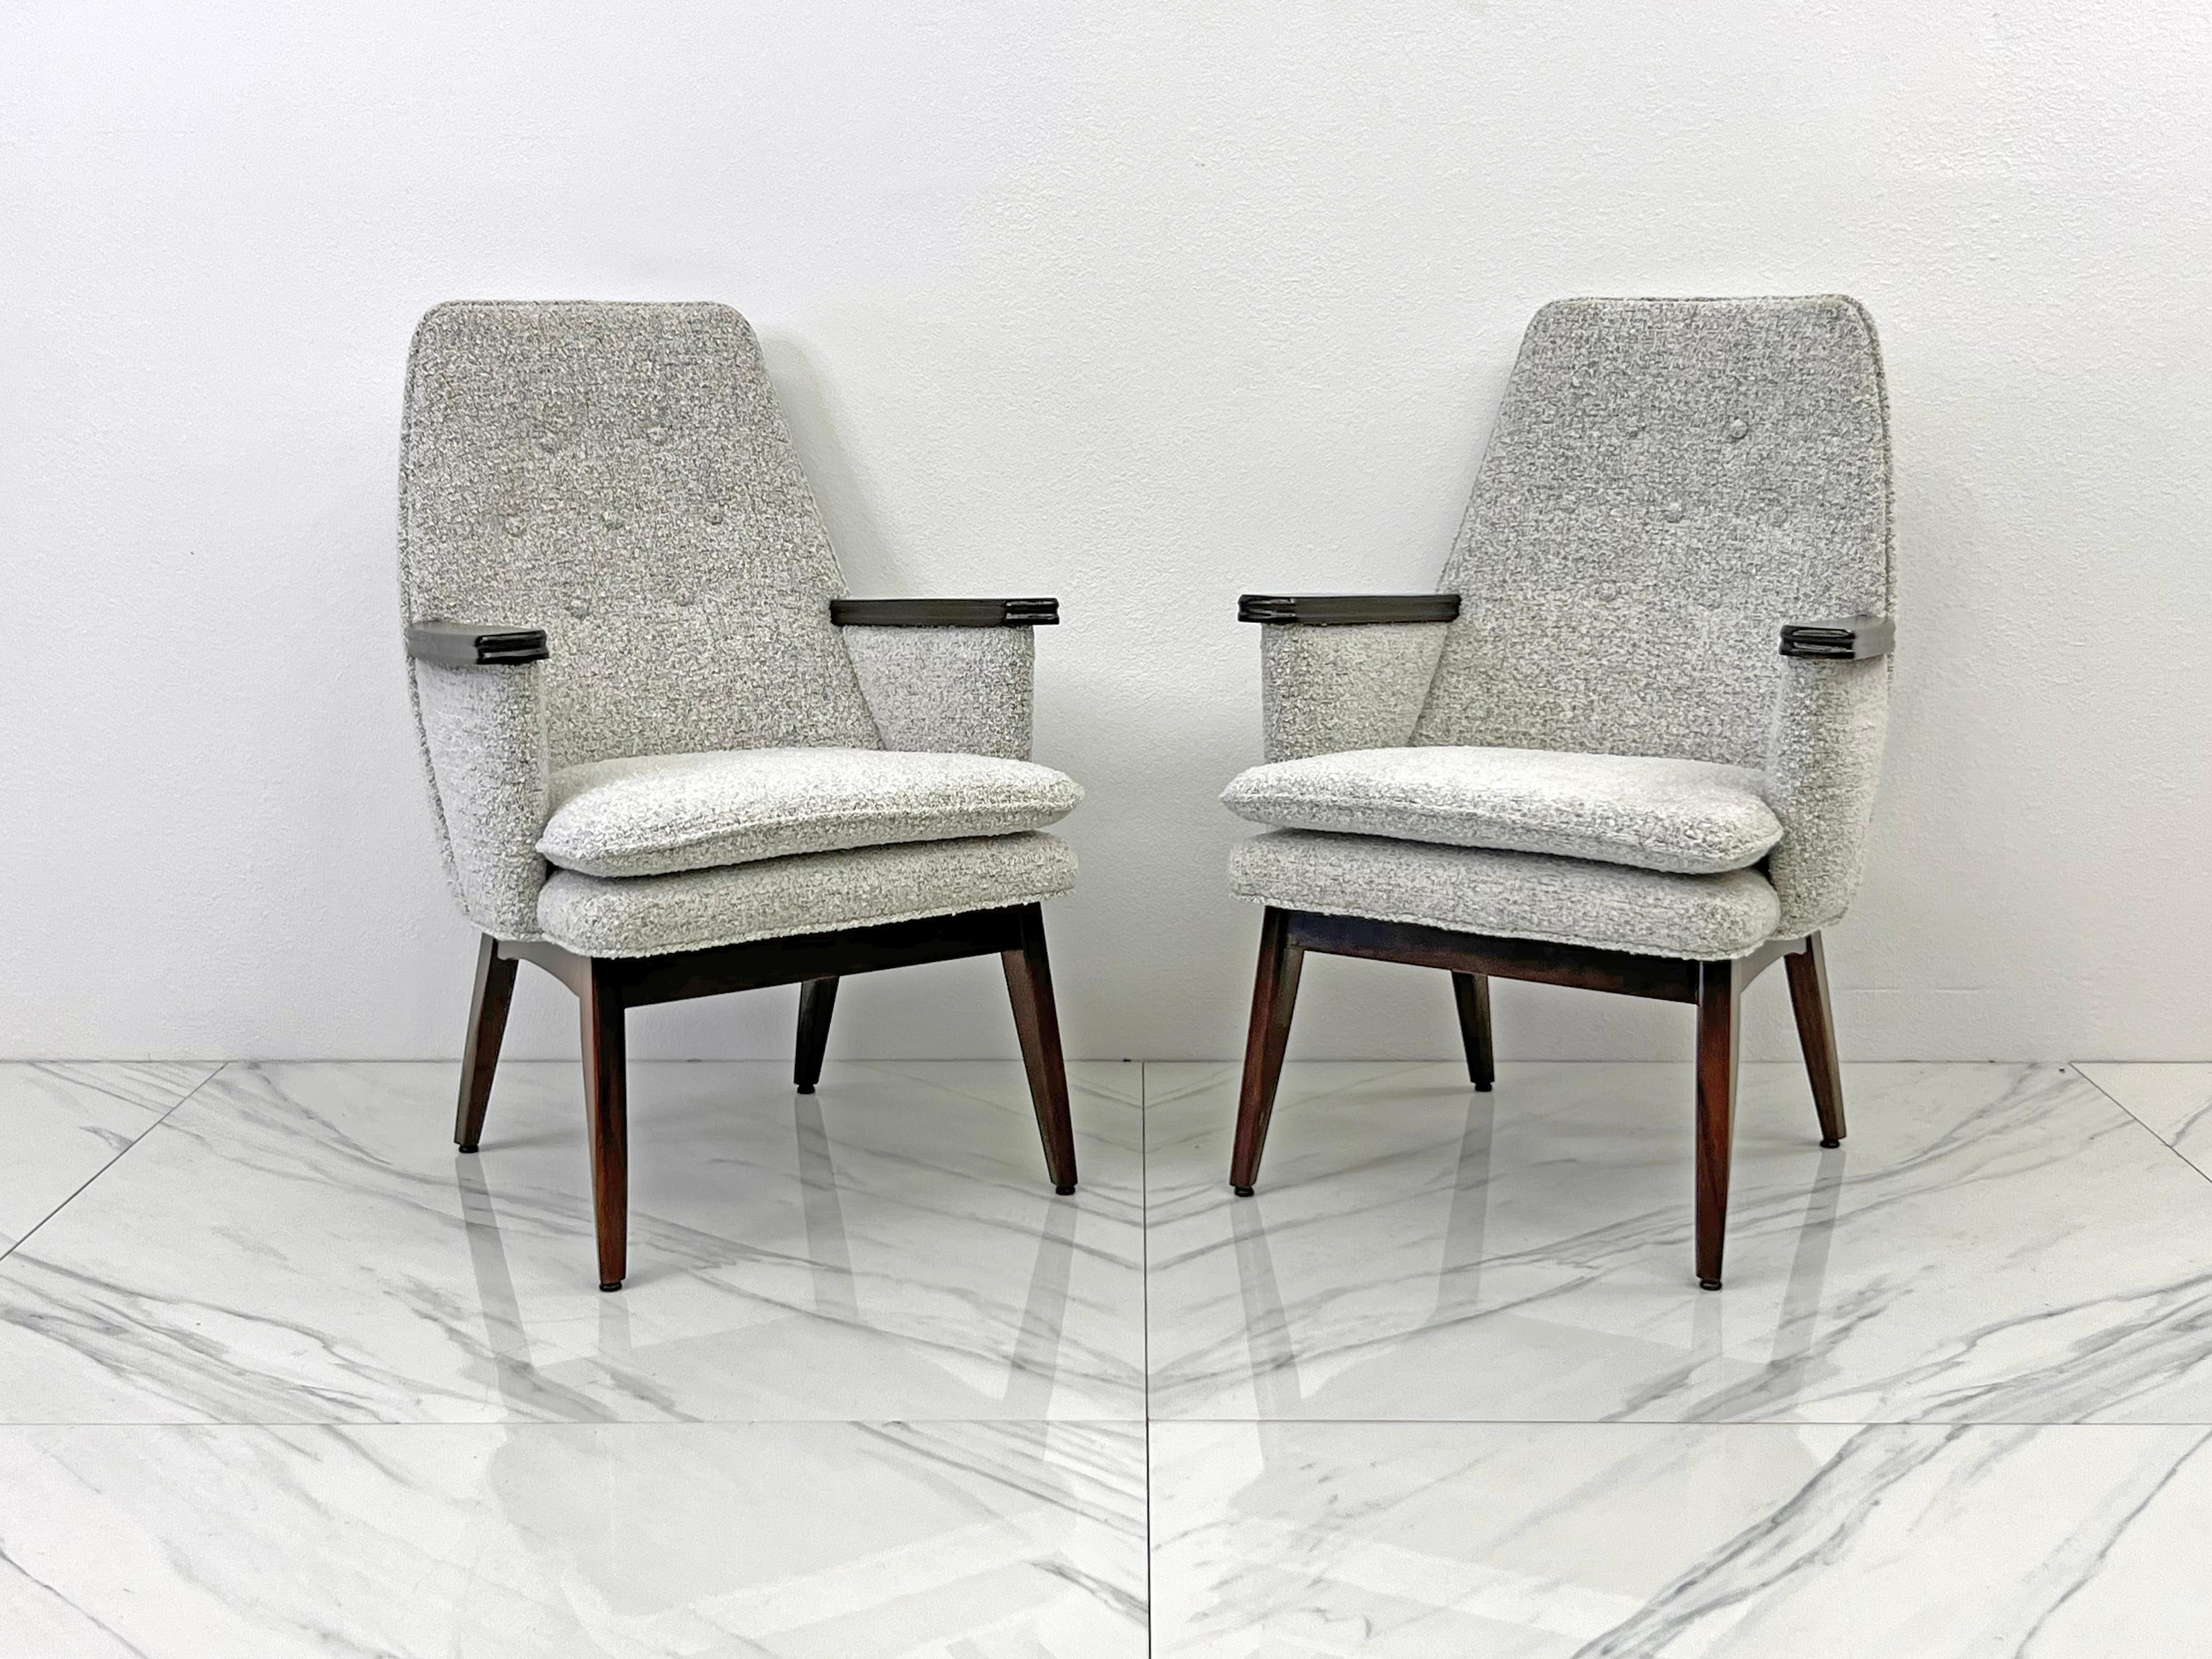 Découvrez ces ravissantes chaises modernes du milieu du siècle, l'incarnation de la sophistication avec un soupçon de fantaisie. Datant des années 1960, ces magnifiques chaises ont été remises au goût du jour, ce qui en fait des objets